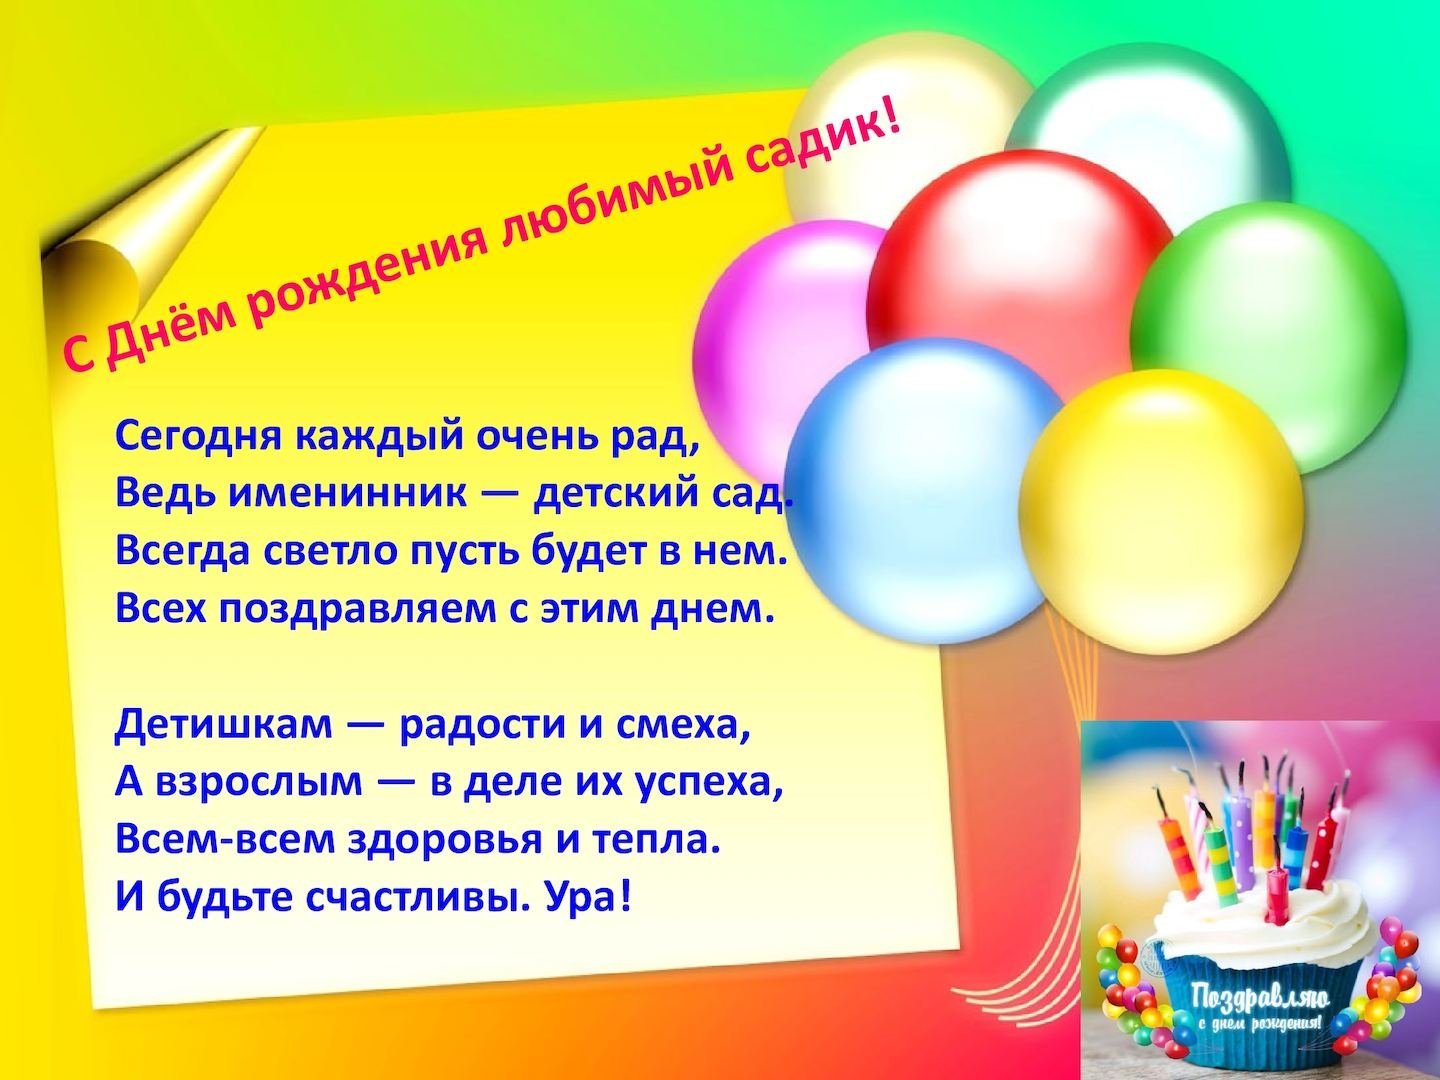 Стенгазета для поздравления с днем рождения в детский сад